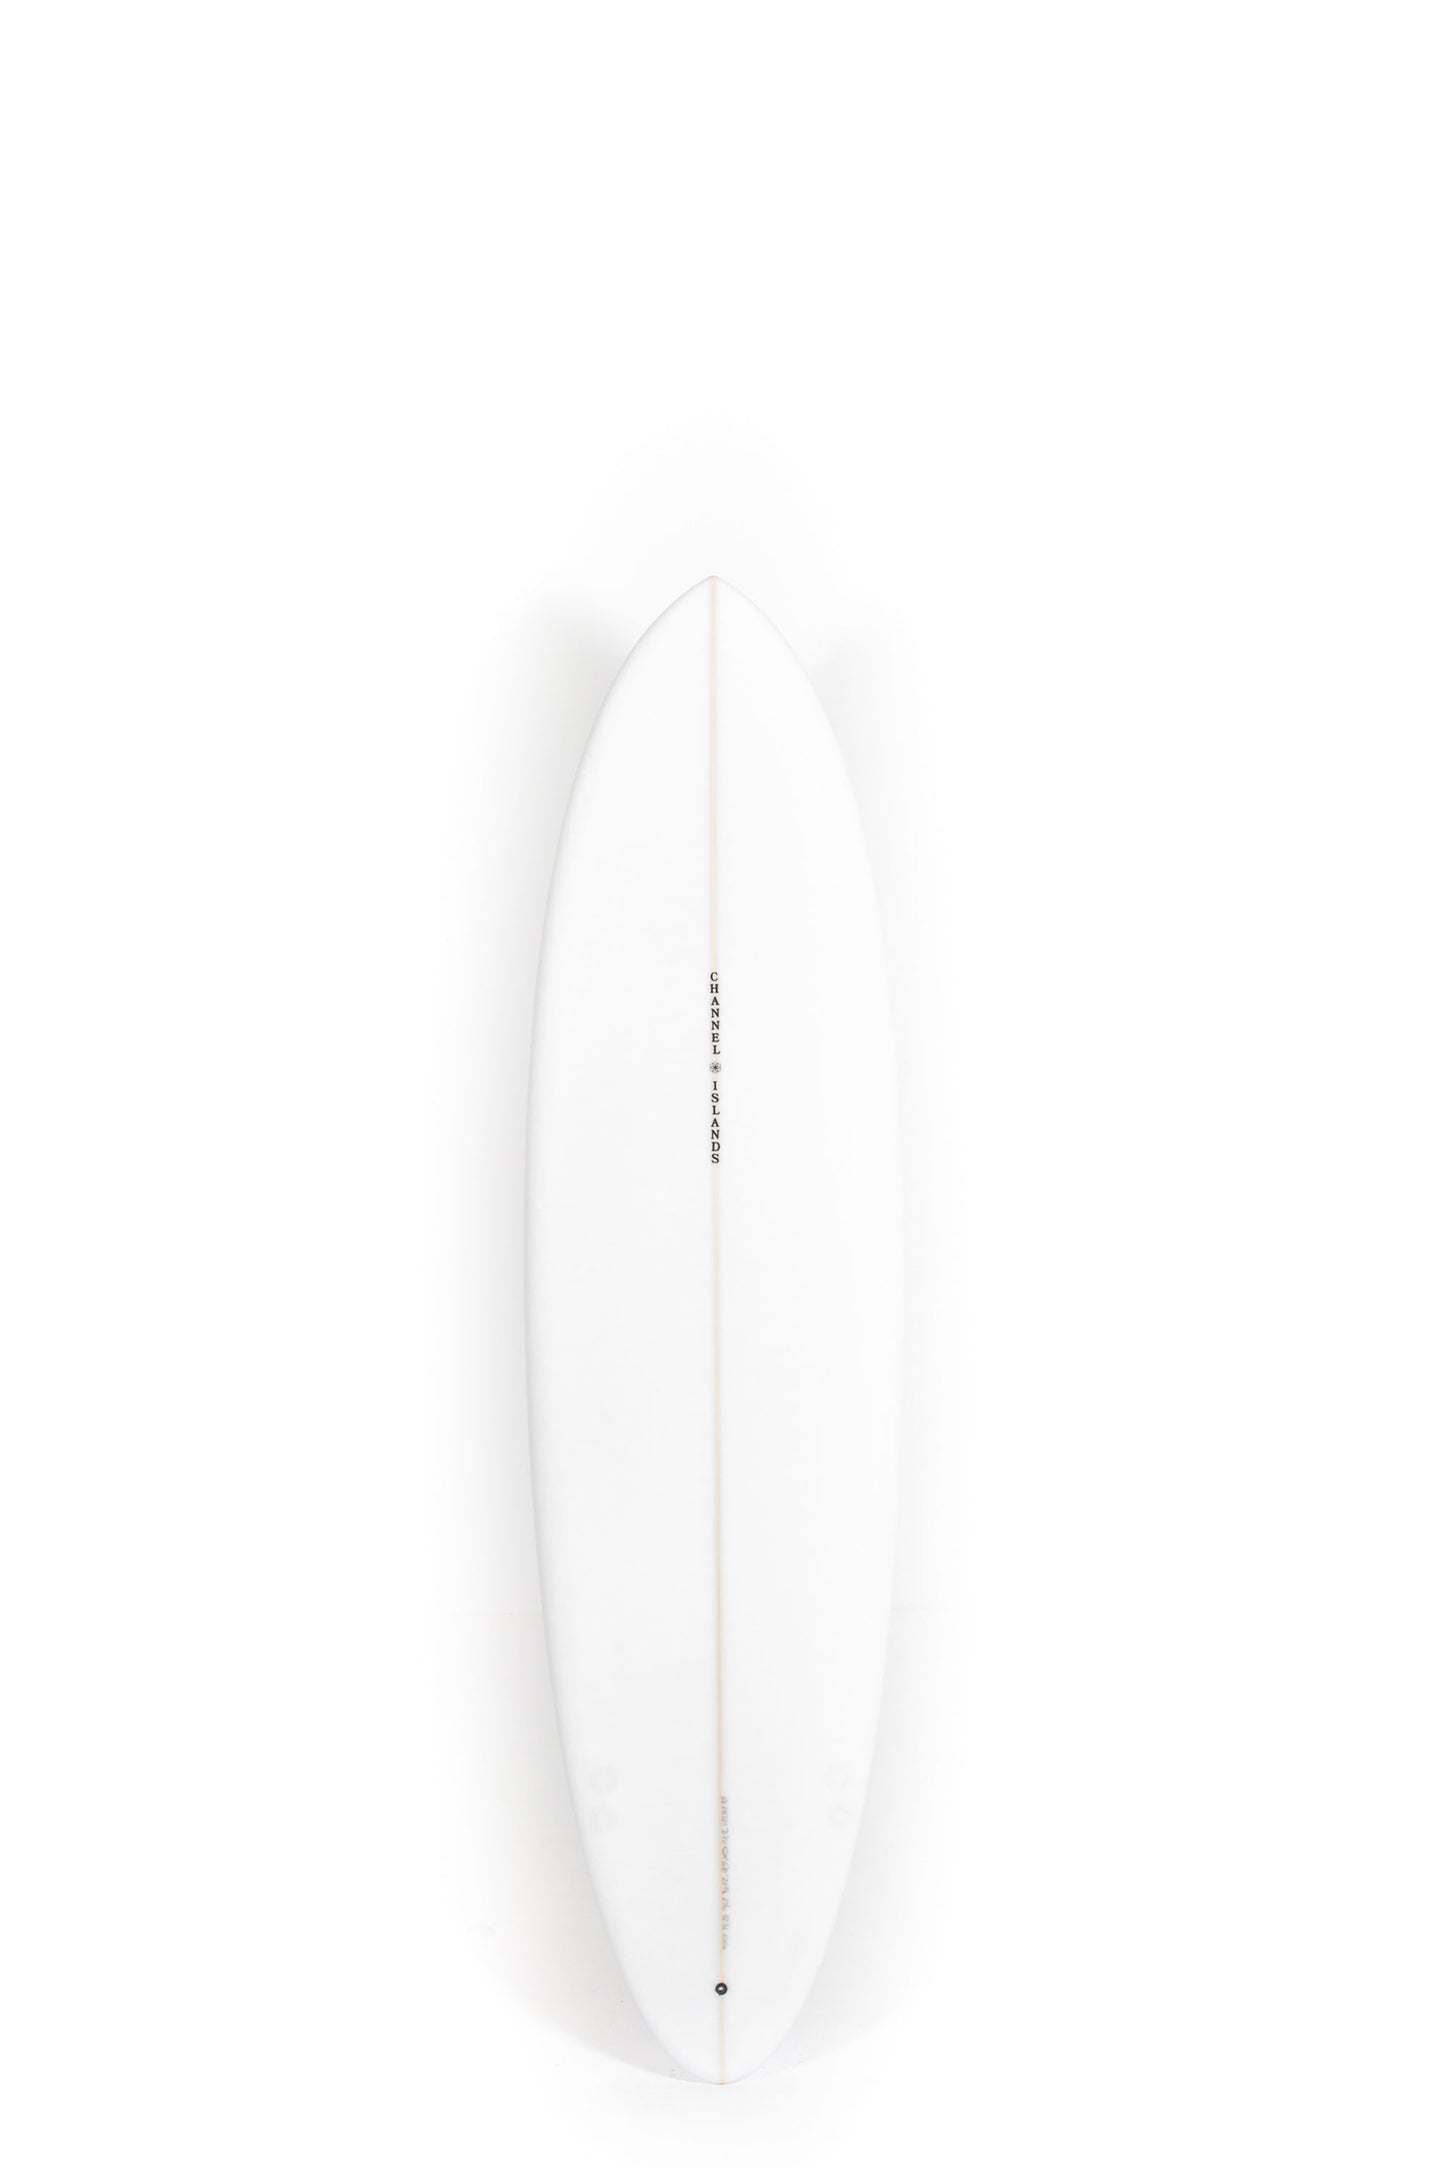 Pukas Surf Shop - Channel Islands - CI MID - 6'10" x 20 7/8 x 2 11/16 - 42,3L - CI28725